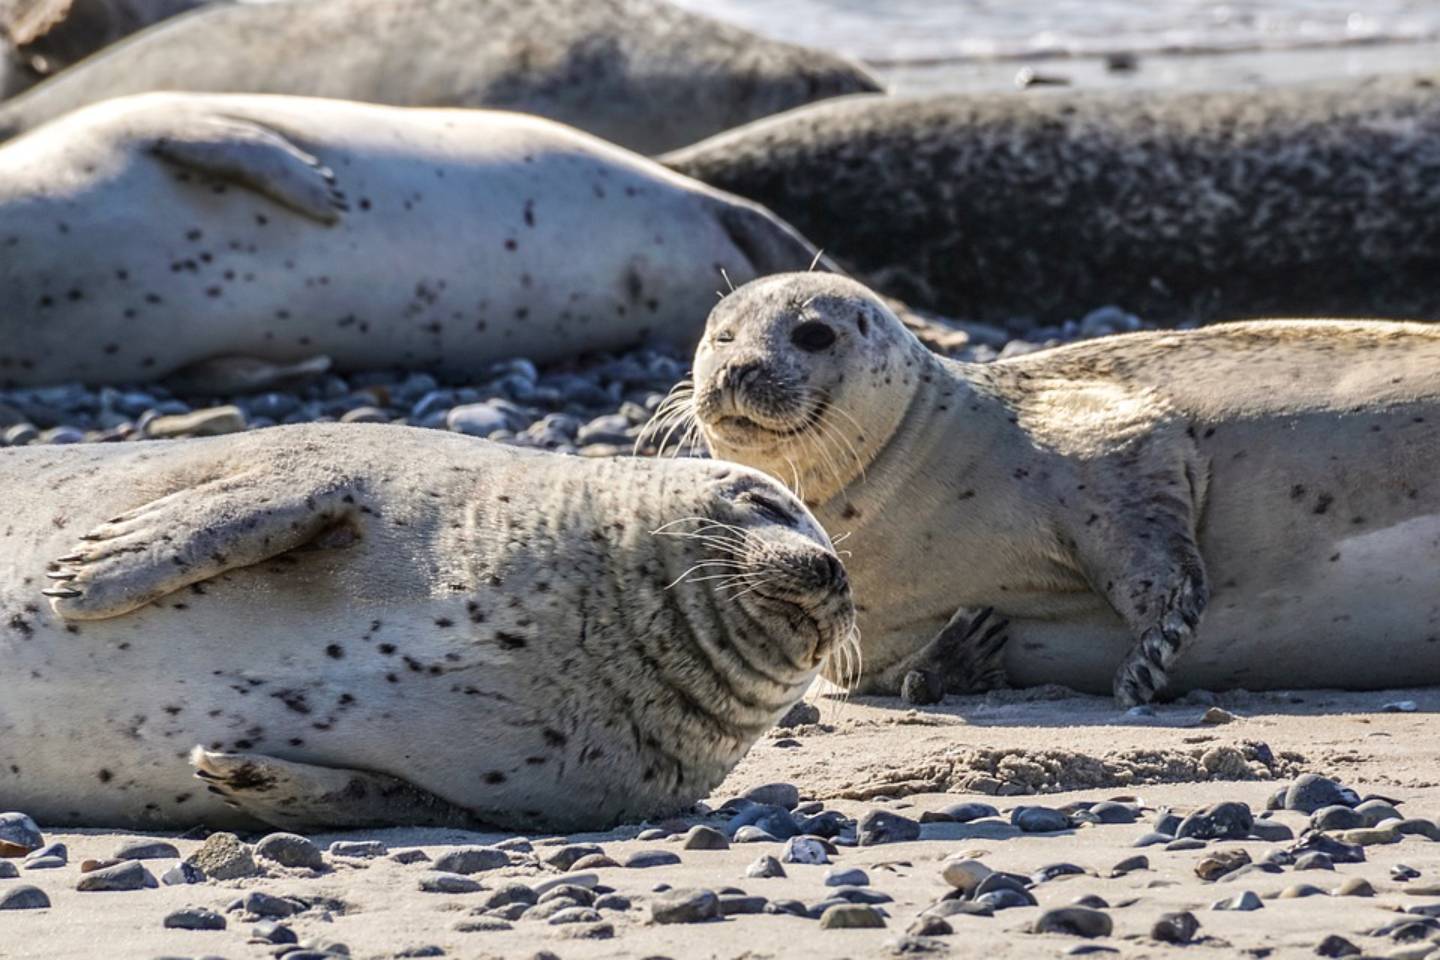 Новости мира / Интересные новости / Мертвые тюлени: в минэкологии РК объяснили ситуацию